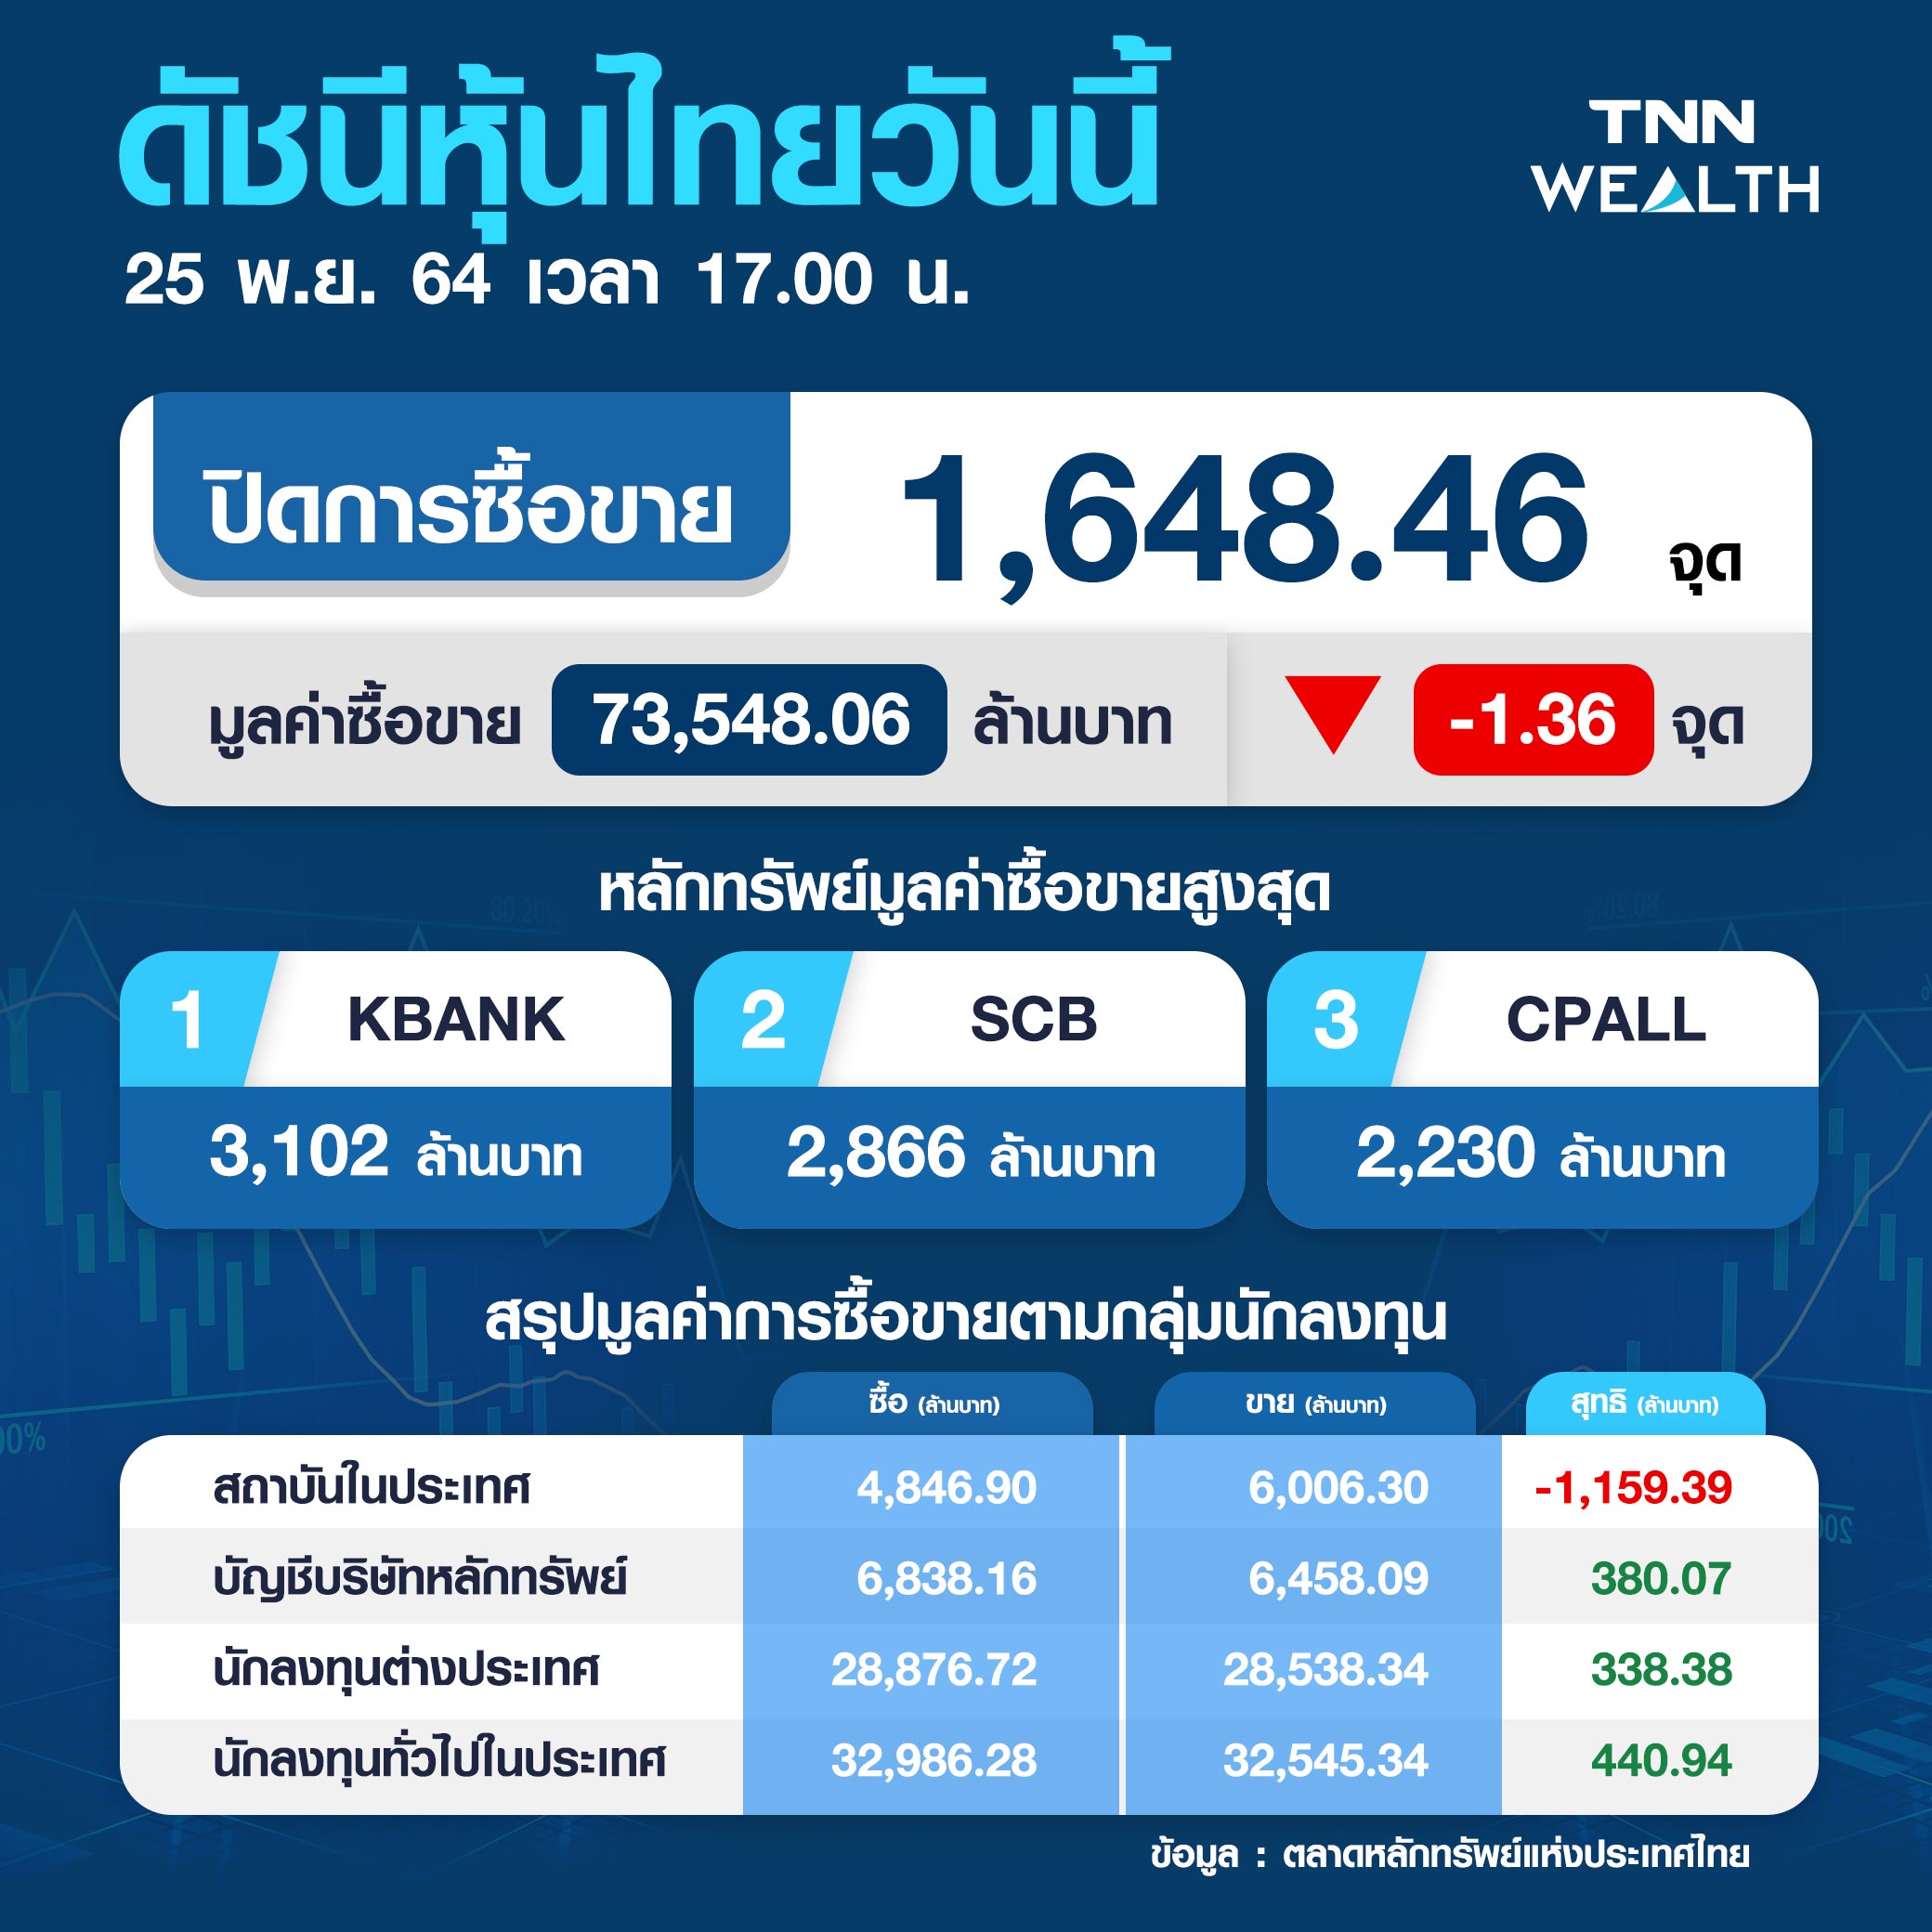 หุ้นไทยไร้ปัจจัยใหม่-กังวลเฟด กดตลาดปิดลบ 1.36 จุด 